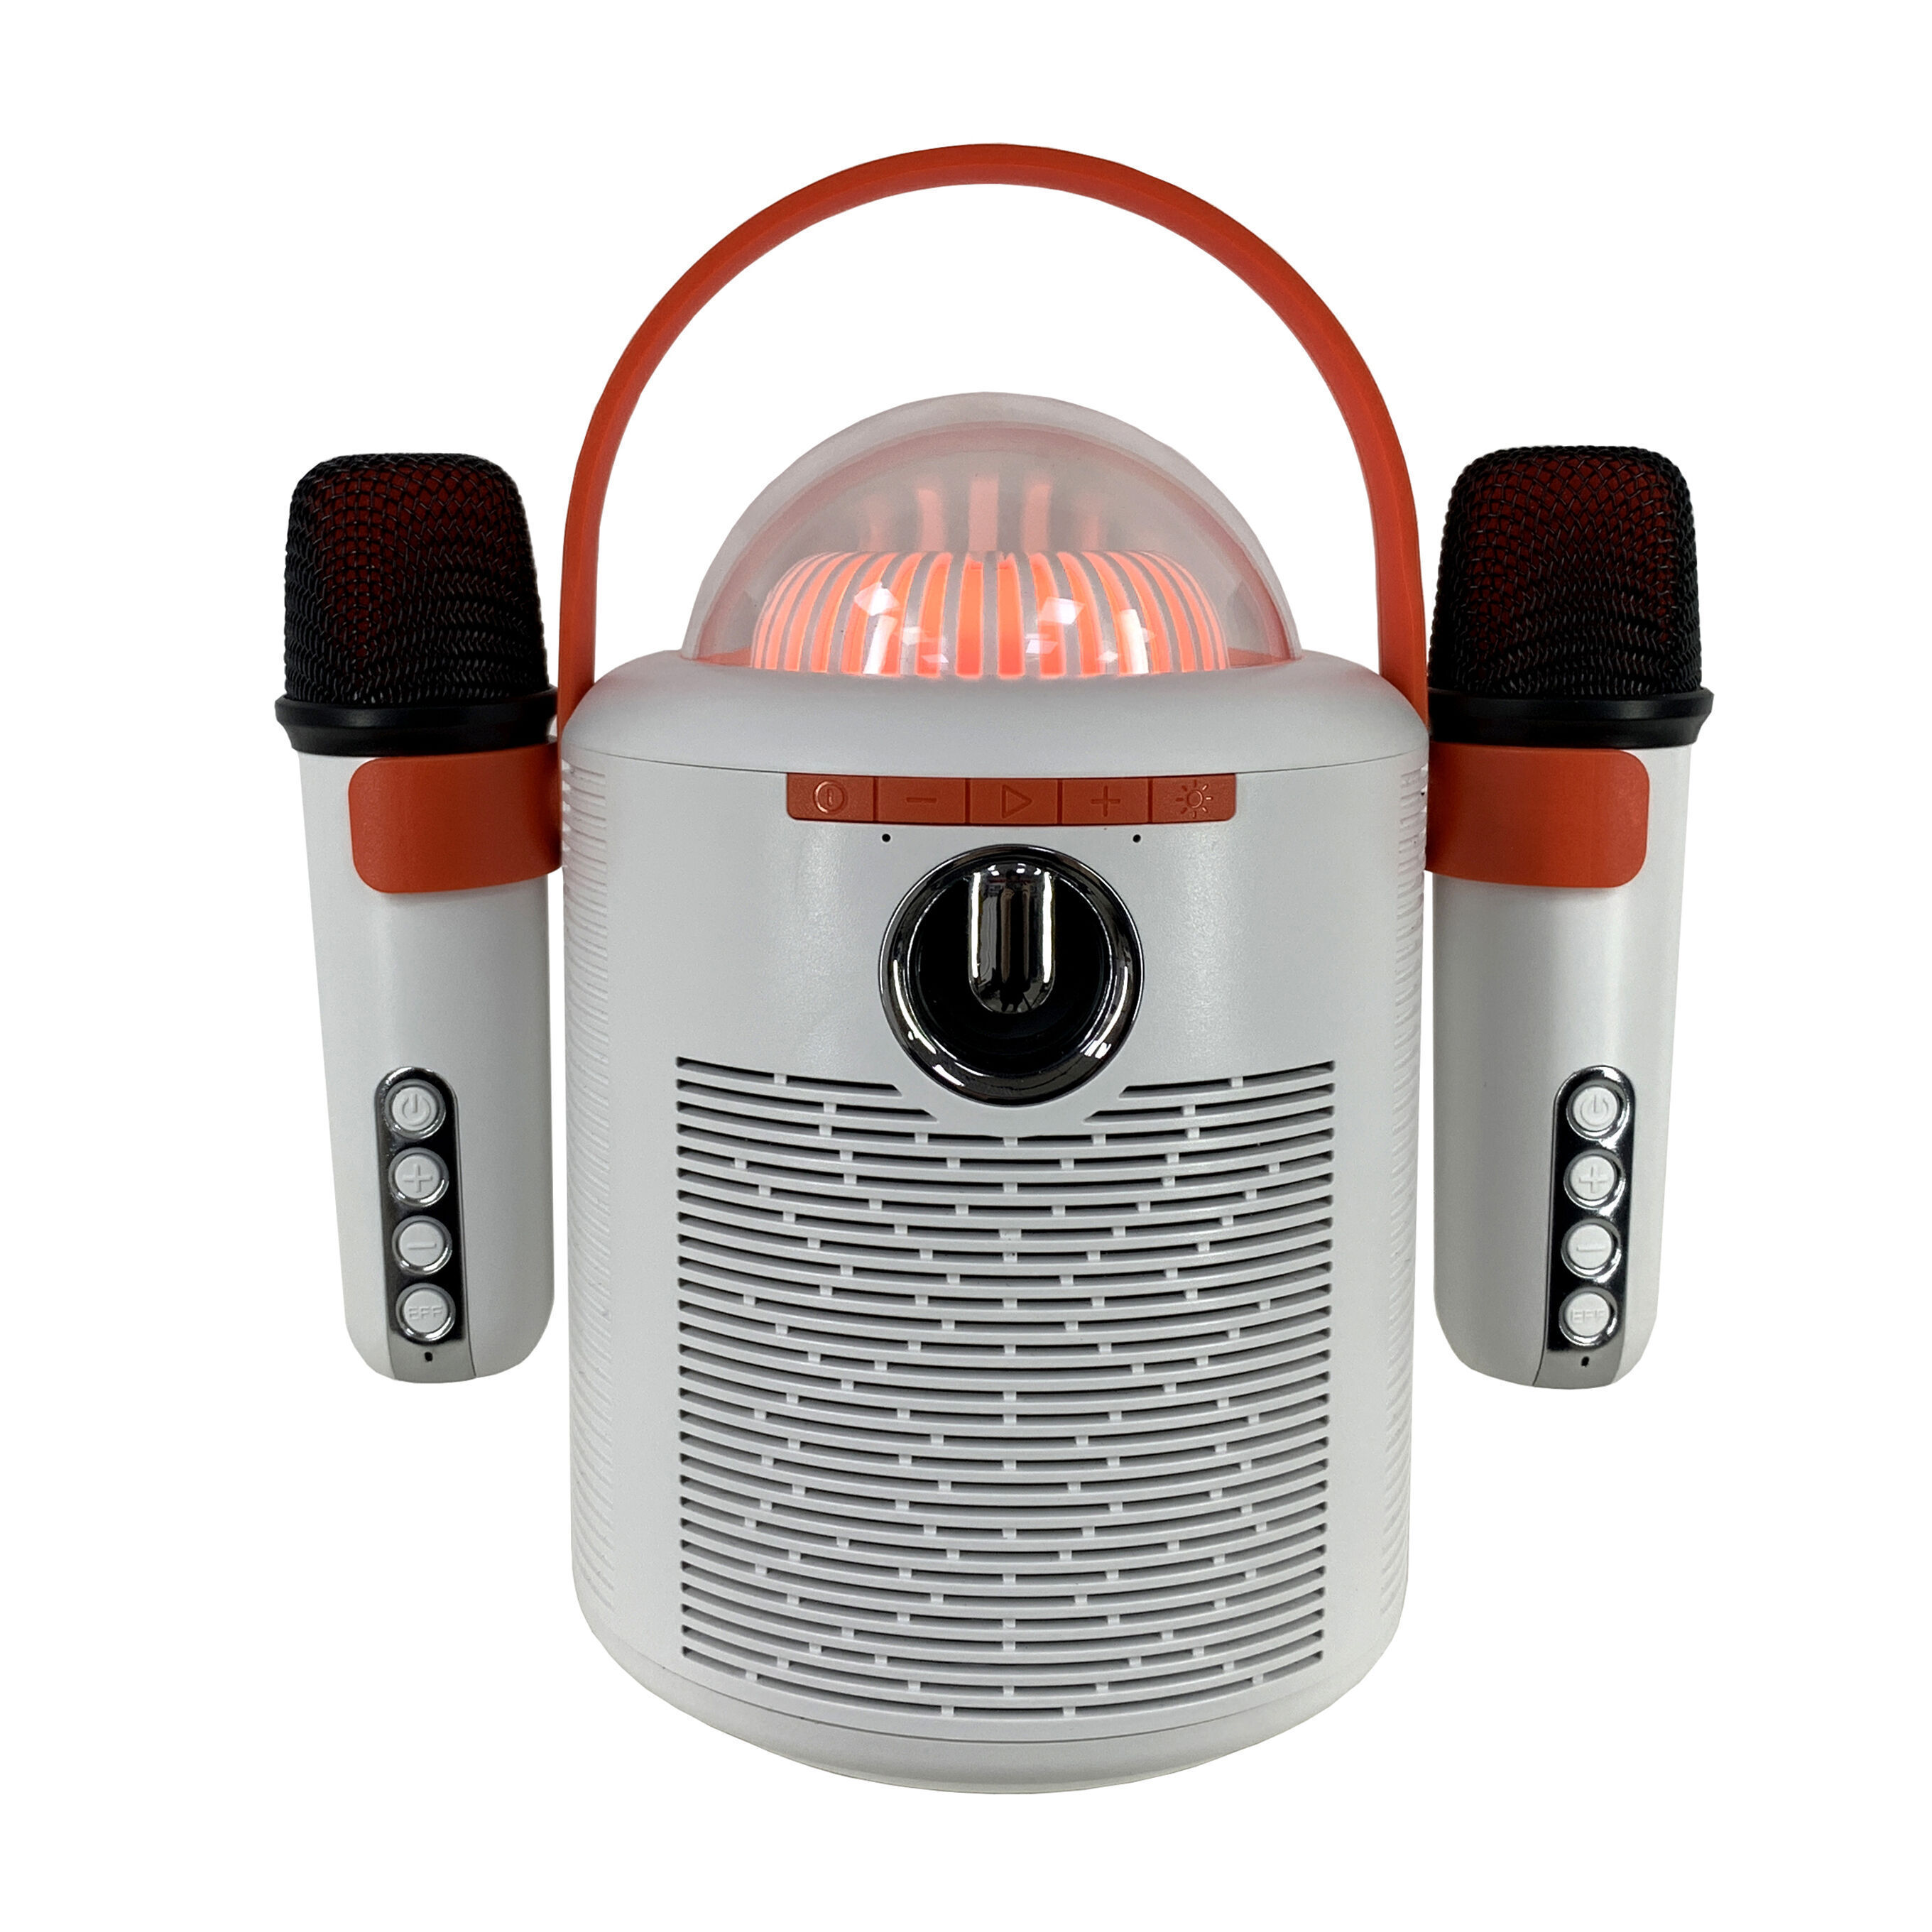 Sans Marque 2 en 1 Microphone Karaoke et haut-parleur Bluetooth sans fil -  Noir à prix pas cher